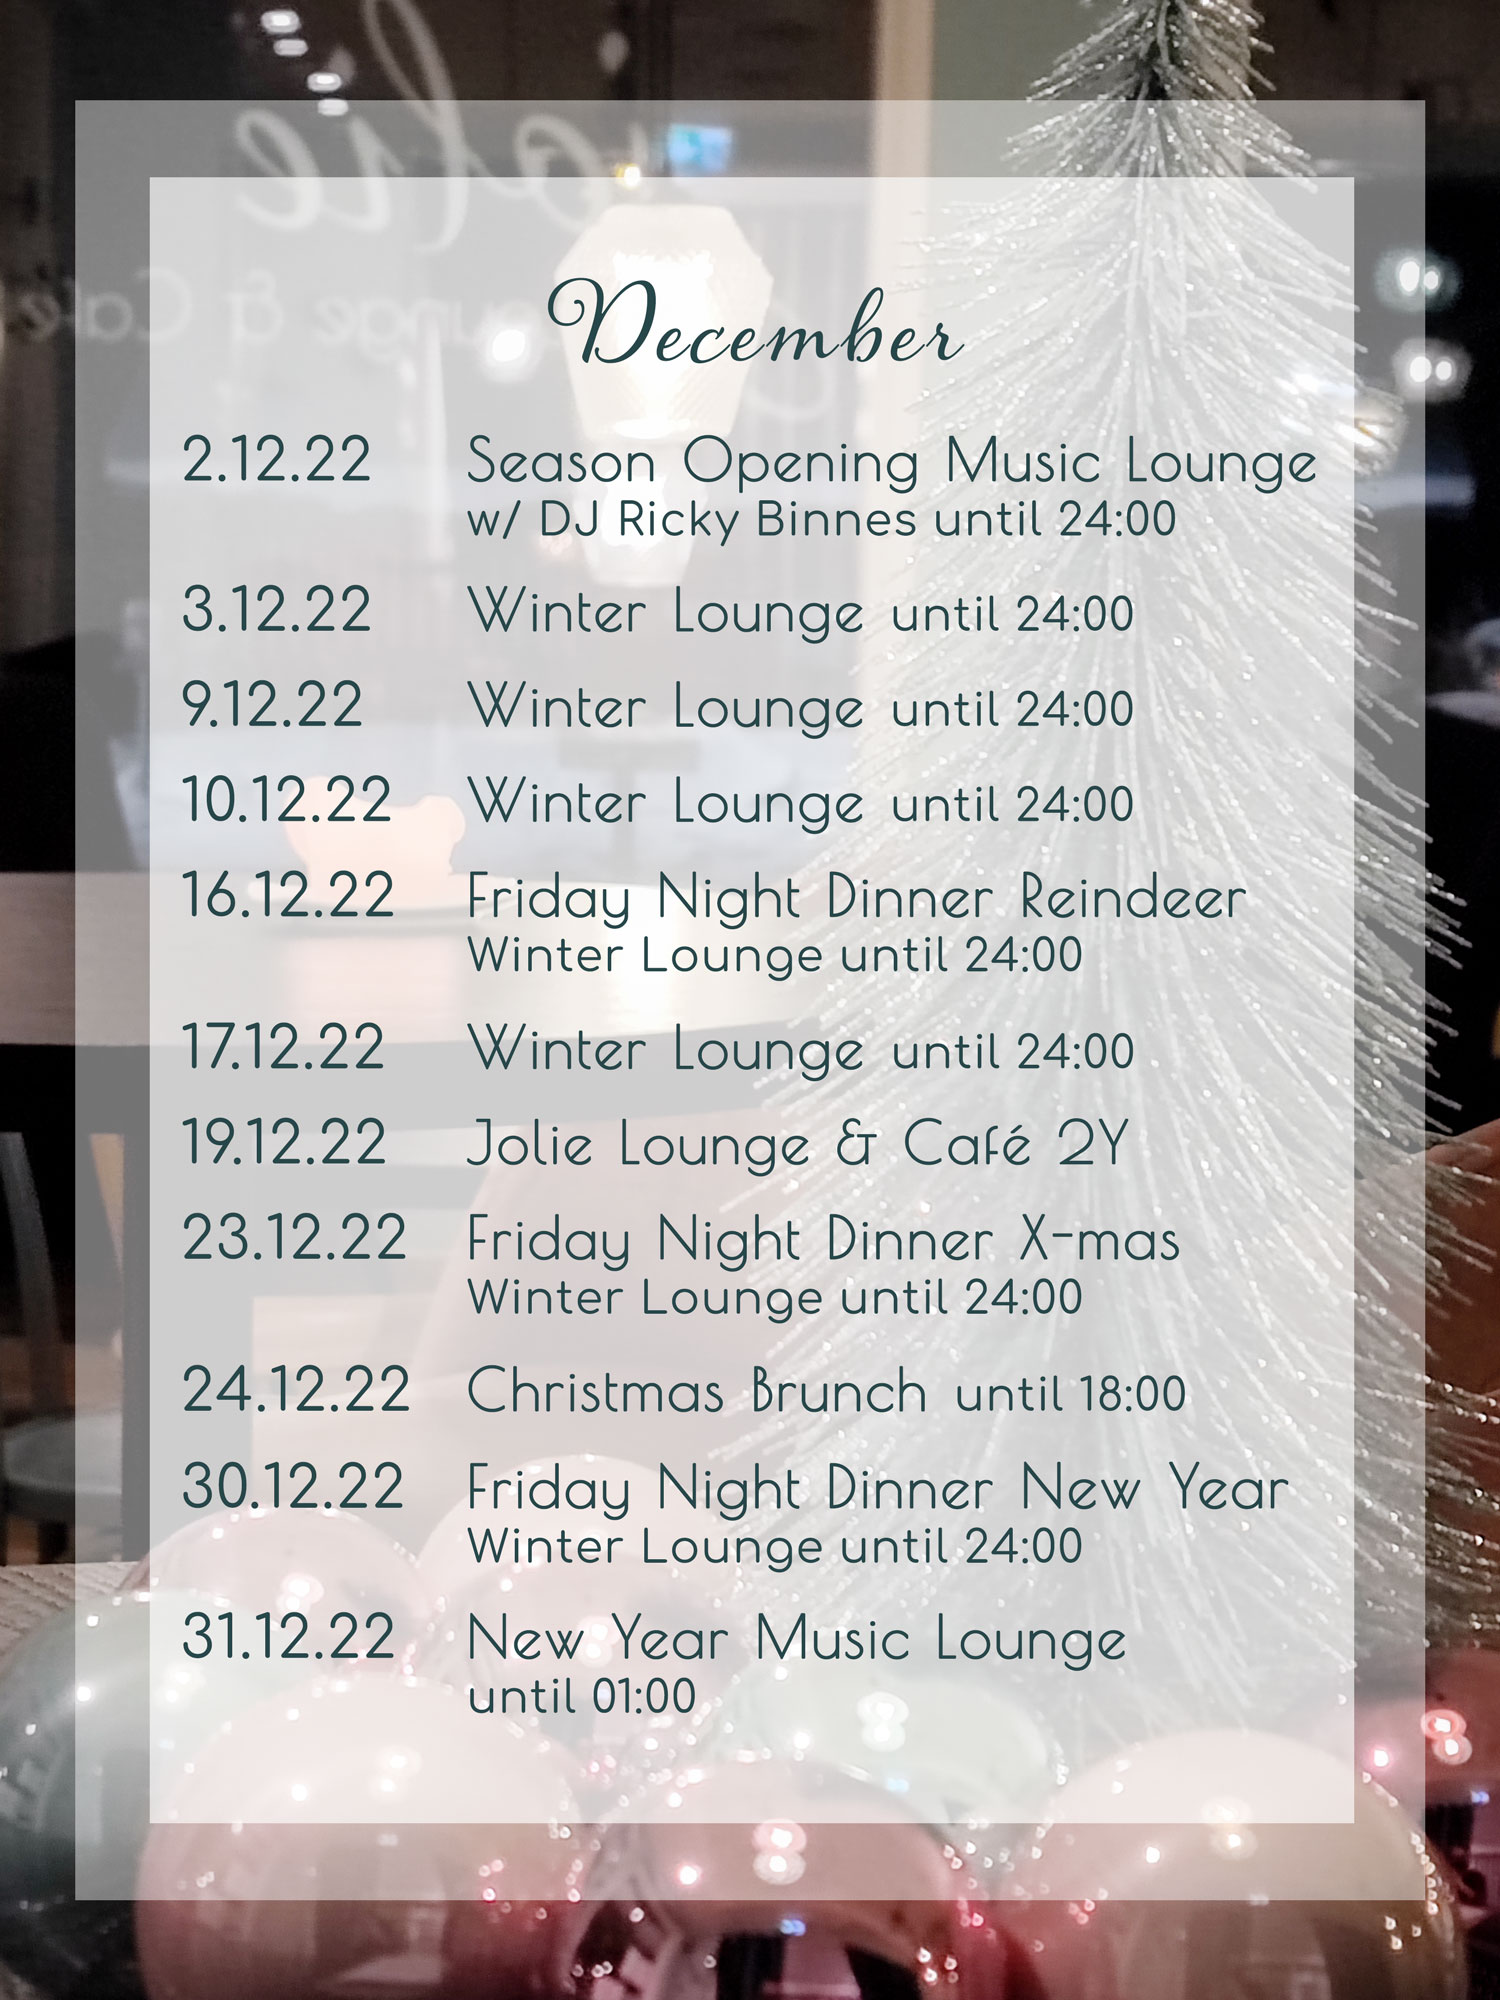 Jolie Lounge & Café Events December 2022